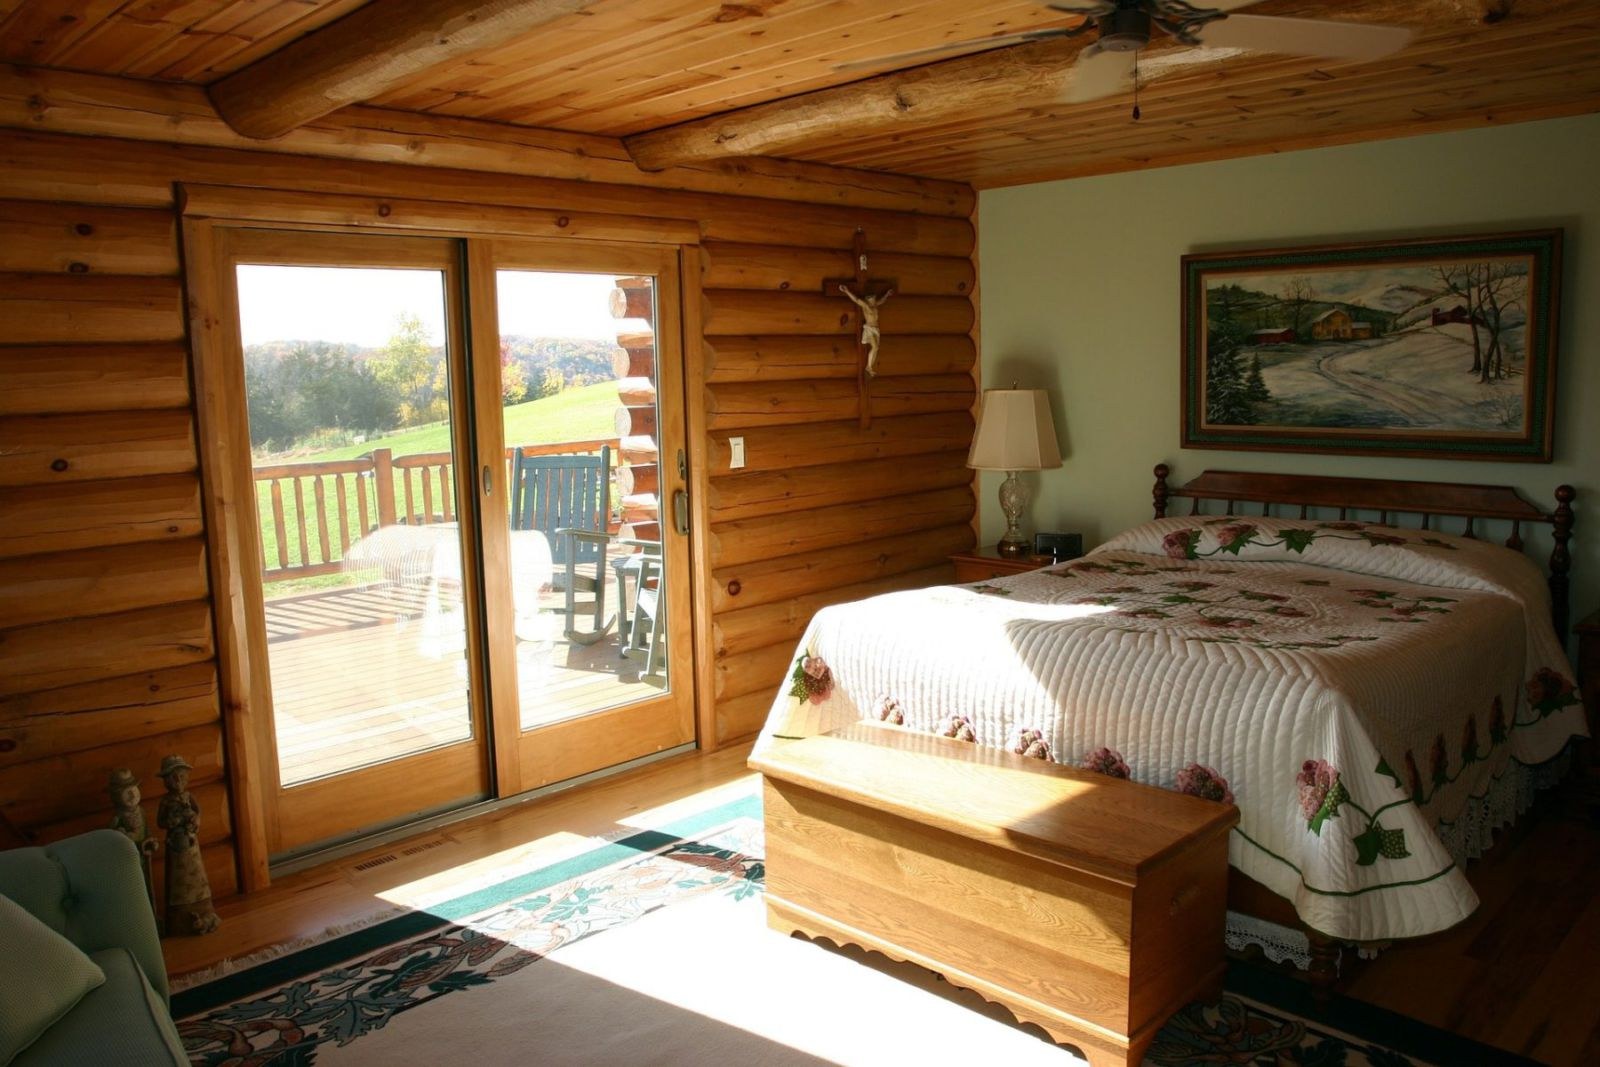 Дизайн спальни в деревянном доме из бревна